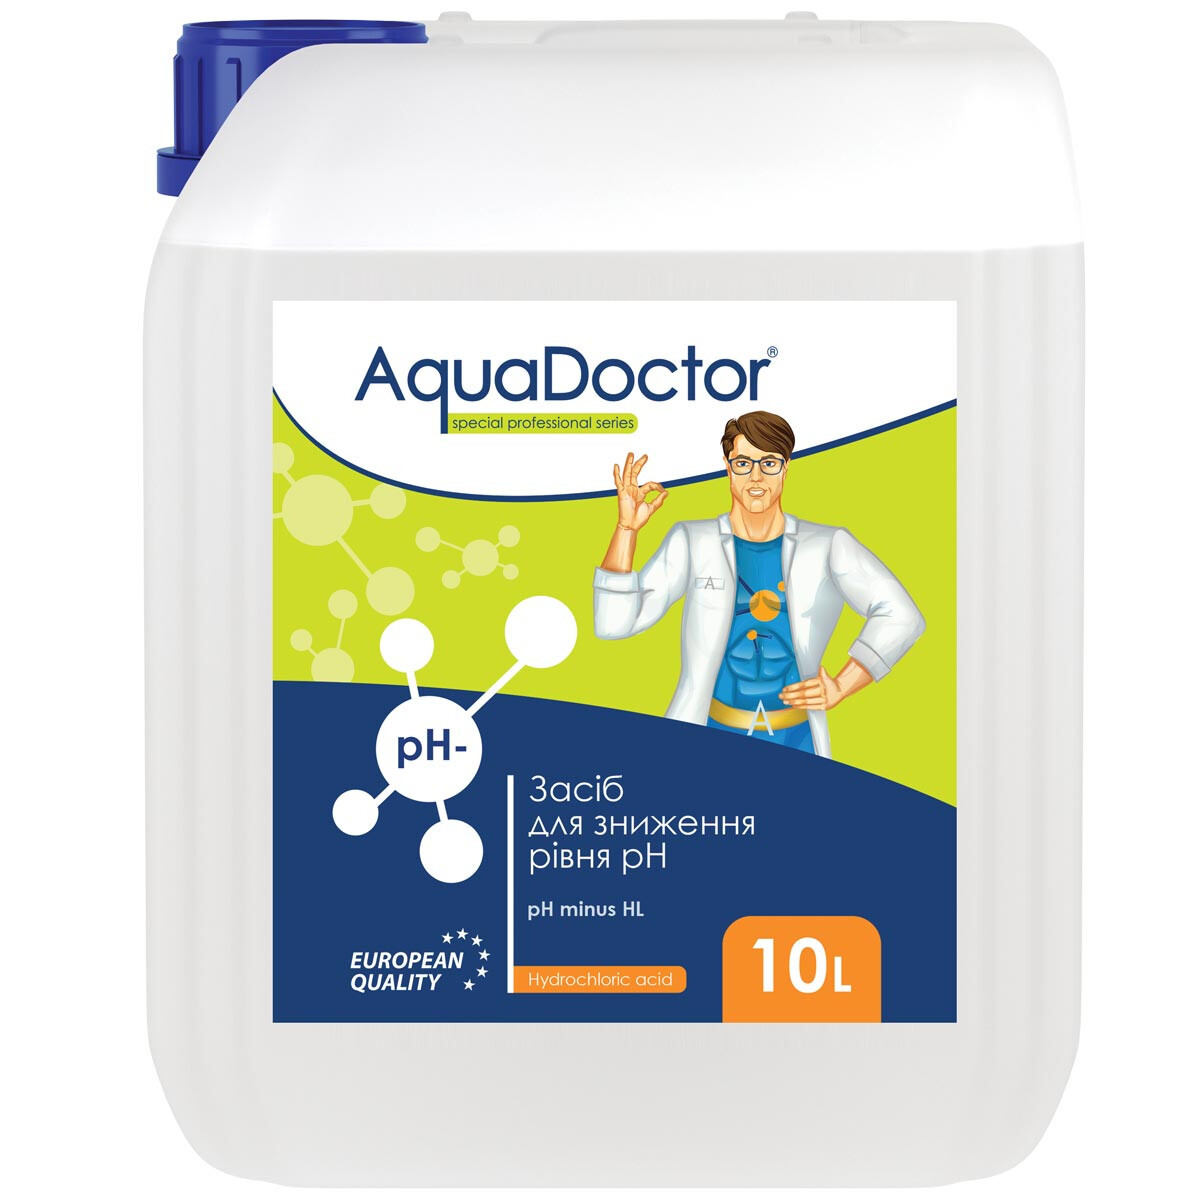 Рідкий засіб для зниження pH AquaDoctor pH Minus HL (Соляна 14%), 10л